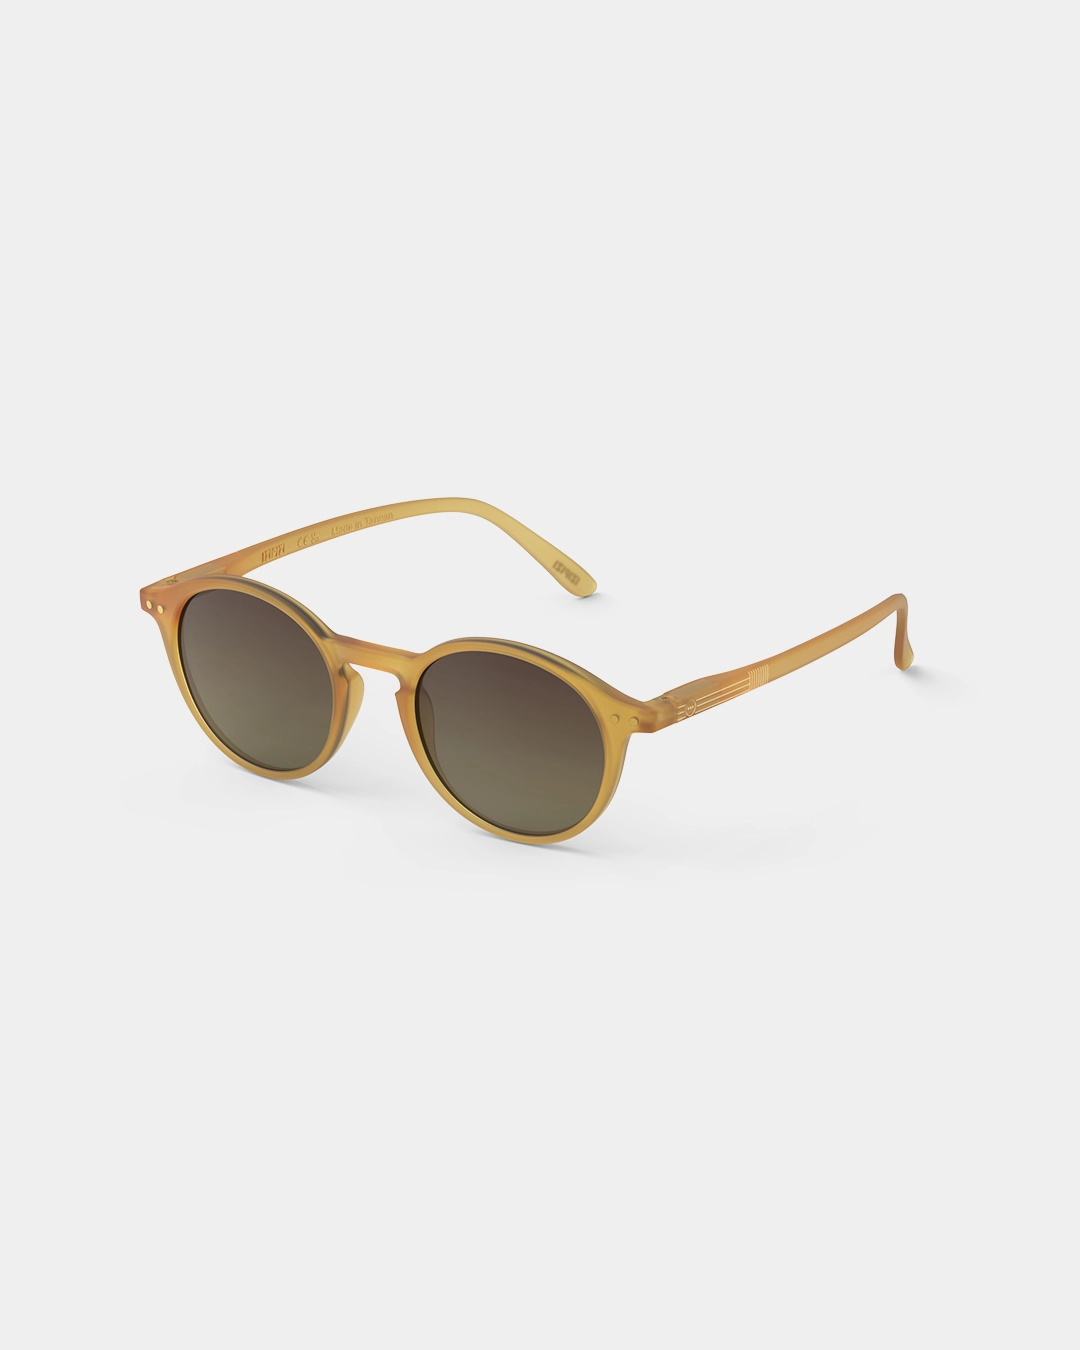 Adult Unisex Sunglasses #D  - Golden Glow